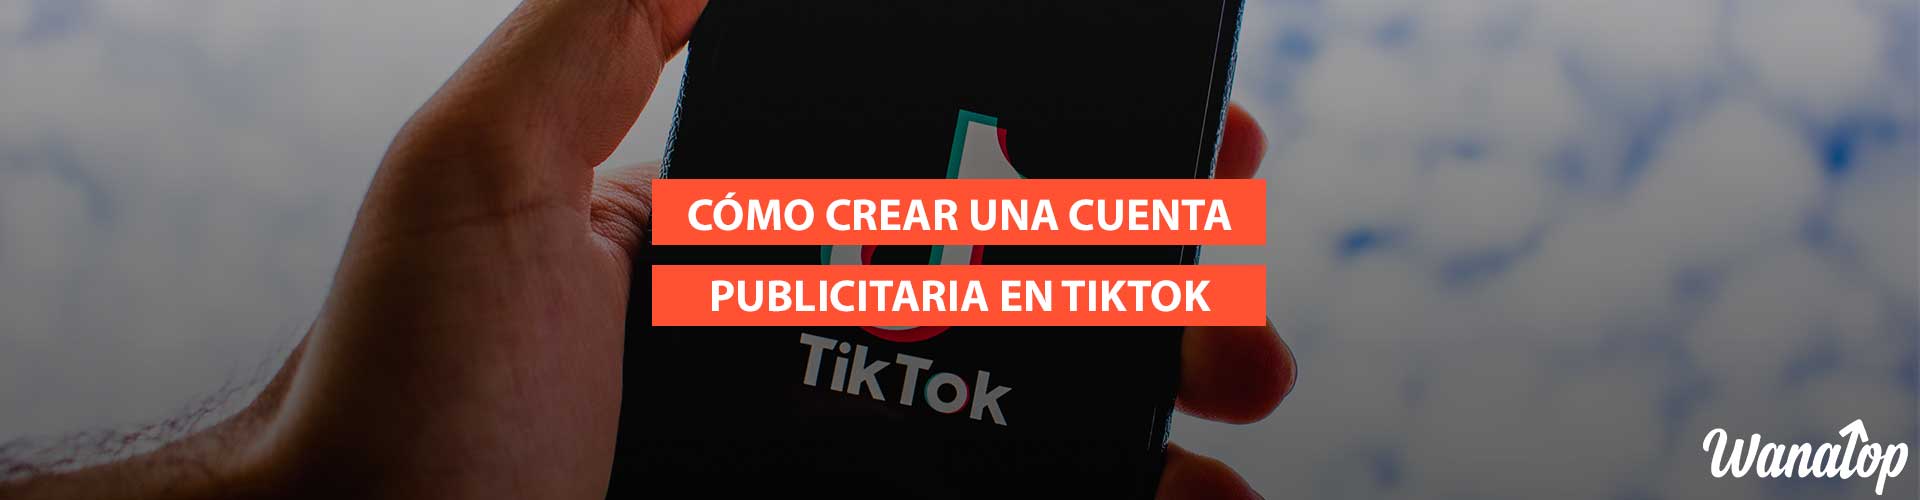 Cómo crear una cuenta publicitaria en TikTok + Consigue crédito gratis